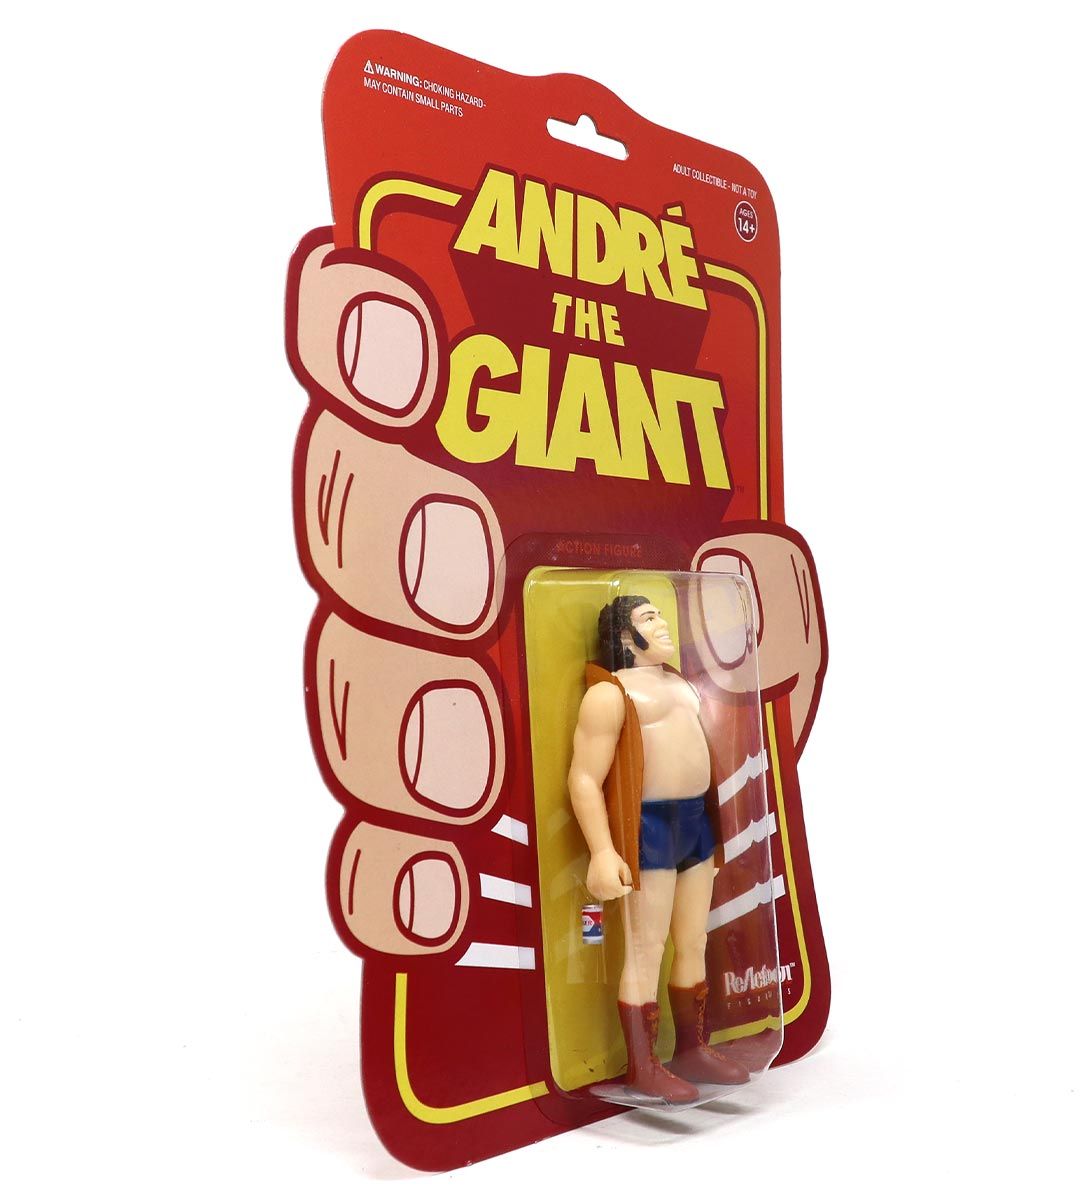 André el gigante - veste - figura de reacción